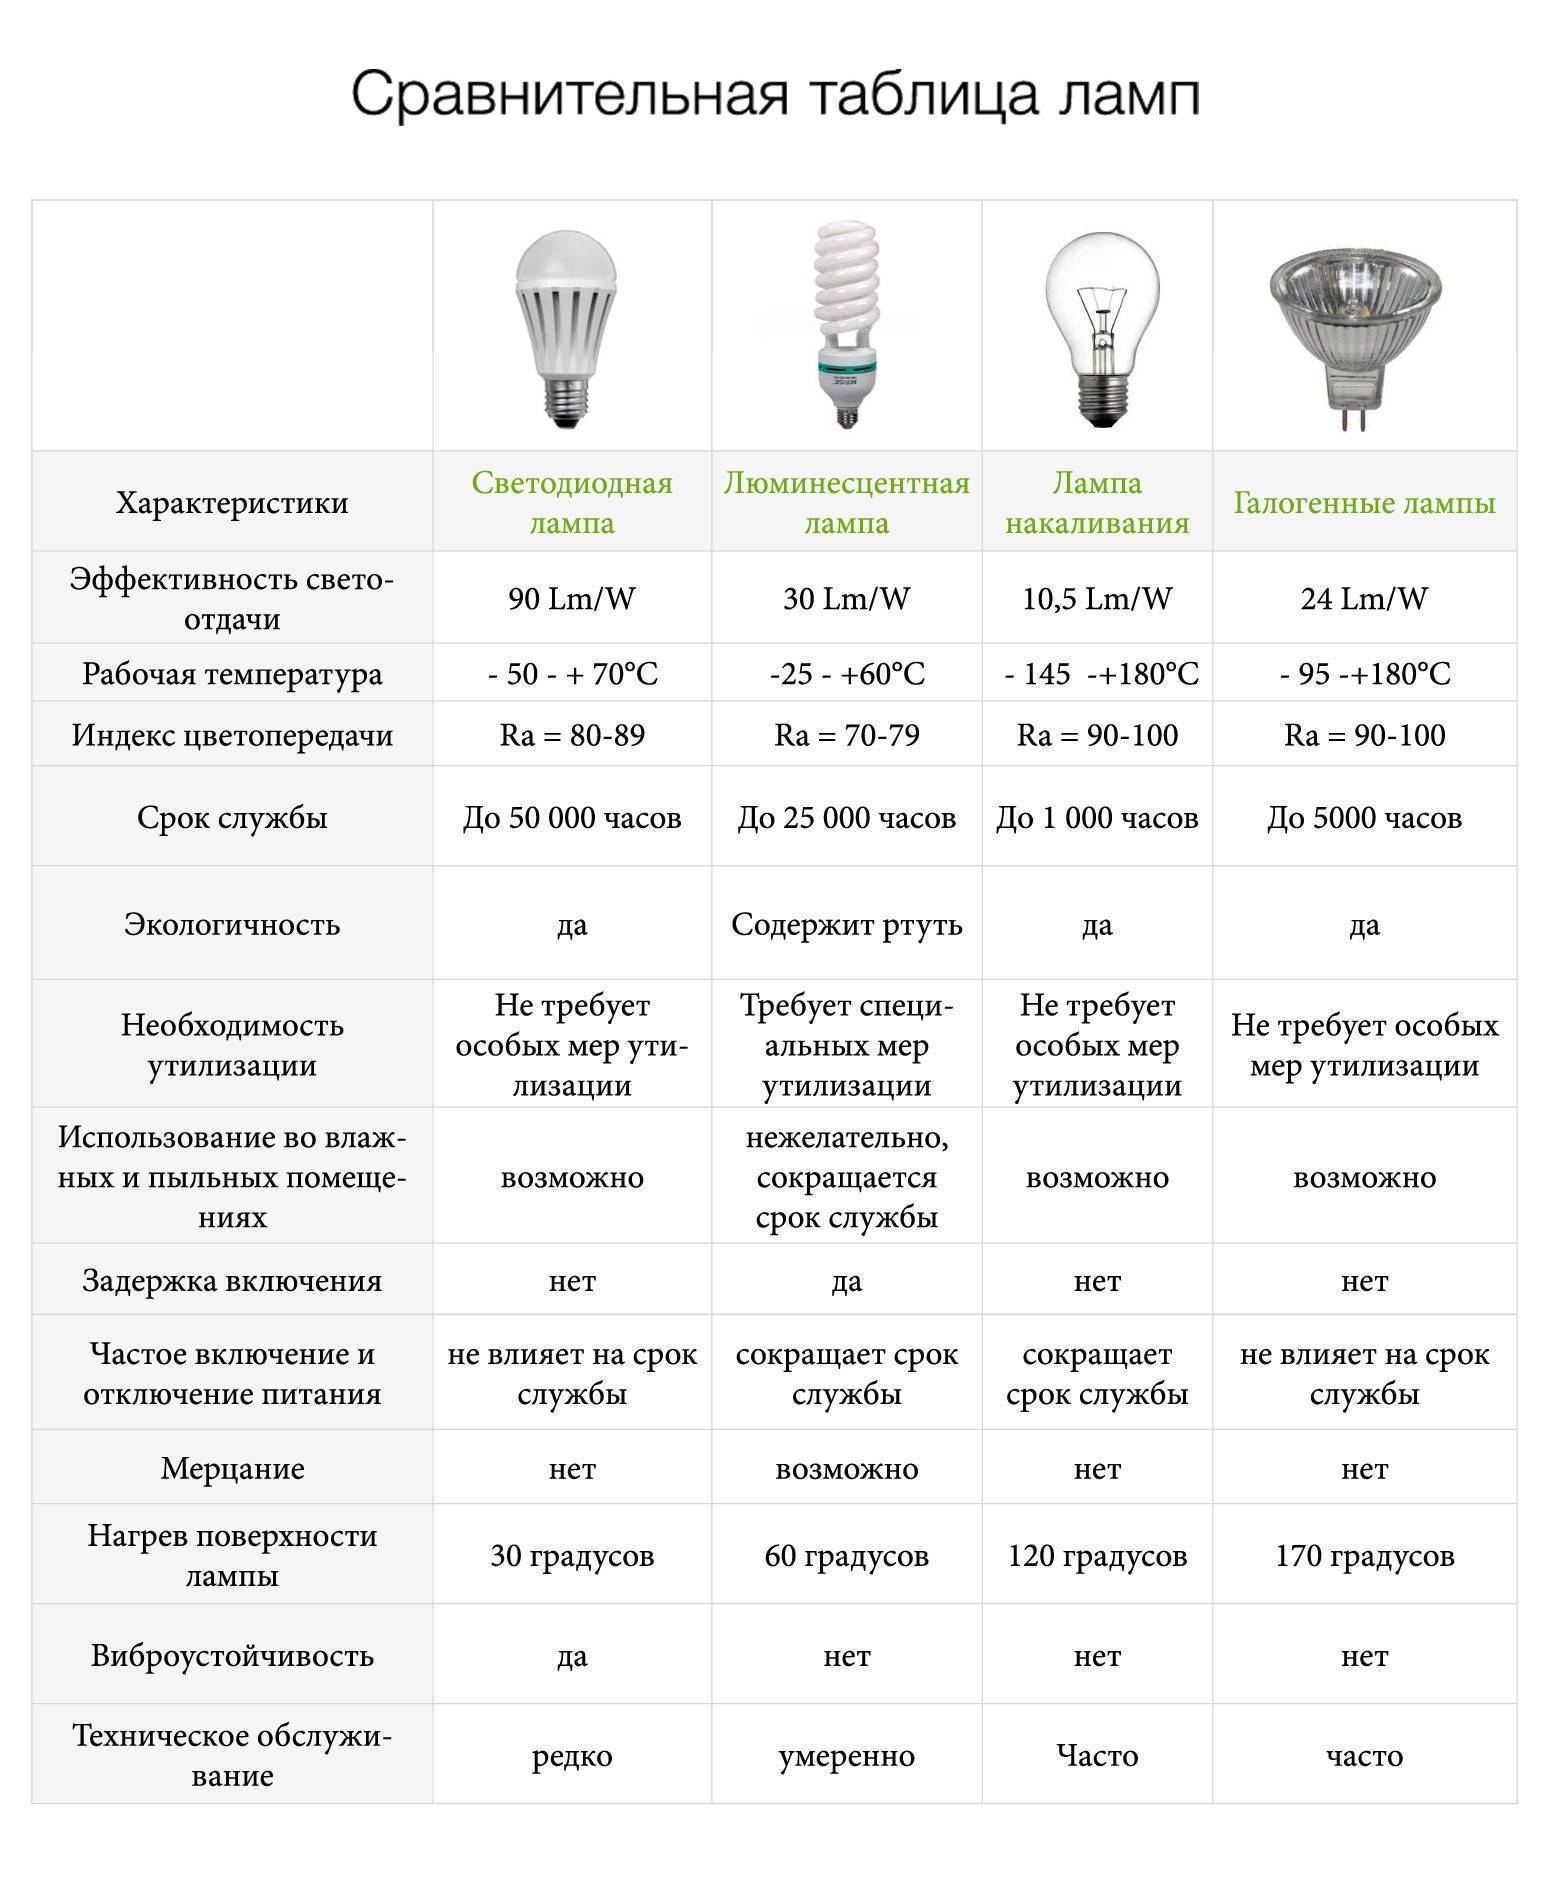 Светодиоды: плюсы и минусы led. стоит ли покупать светодиодные лампы led?